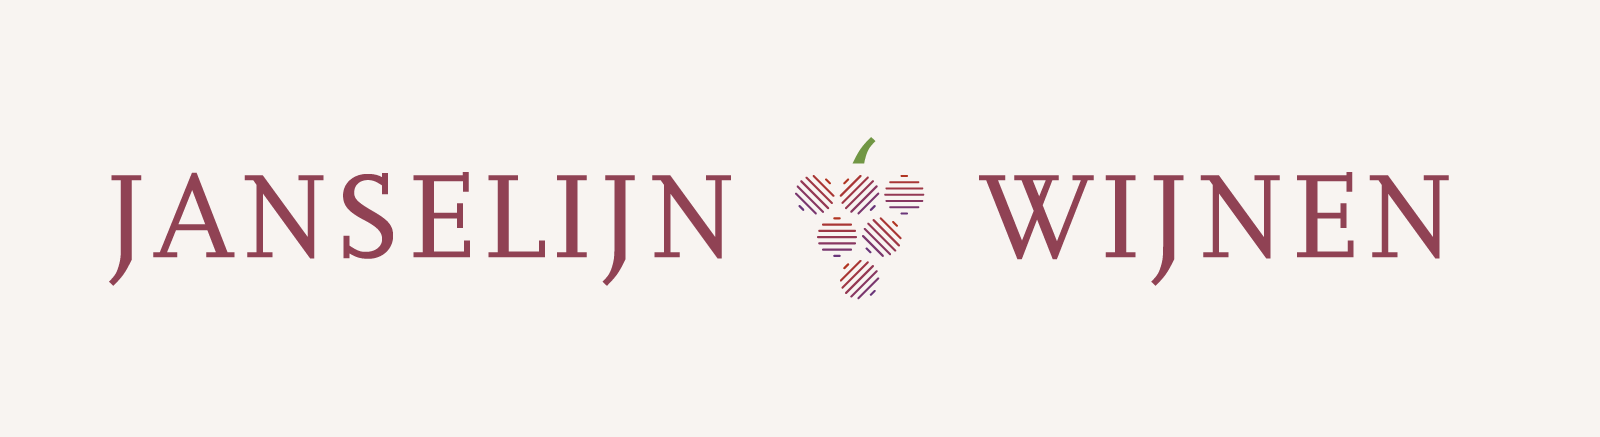 janselijn wijnen ontwerp logo